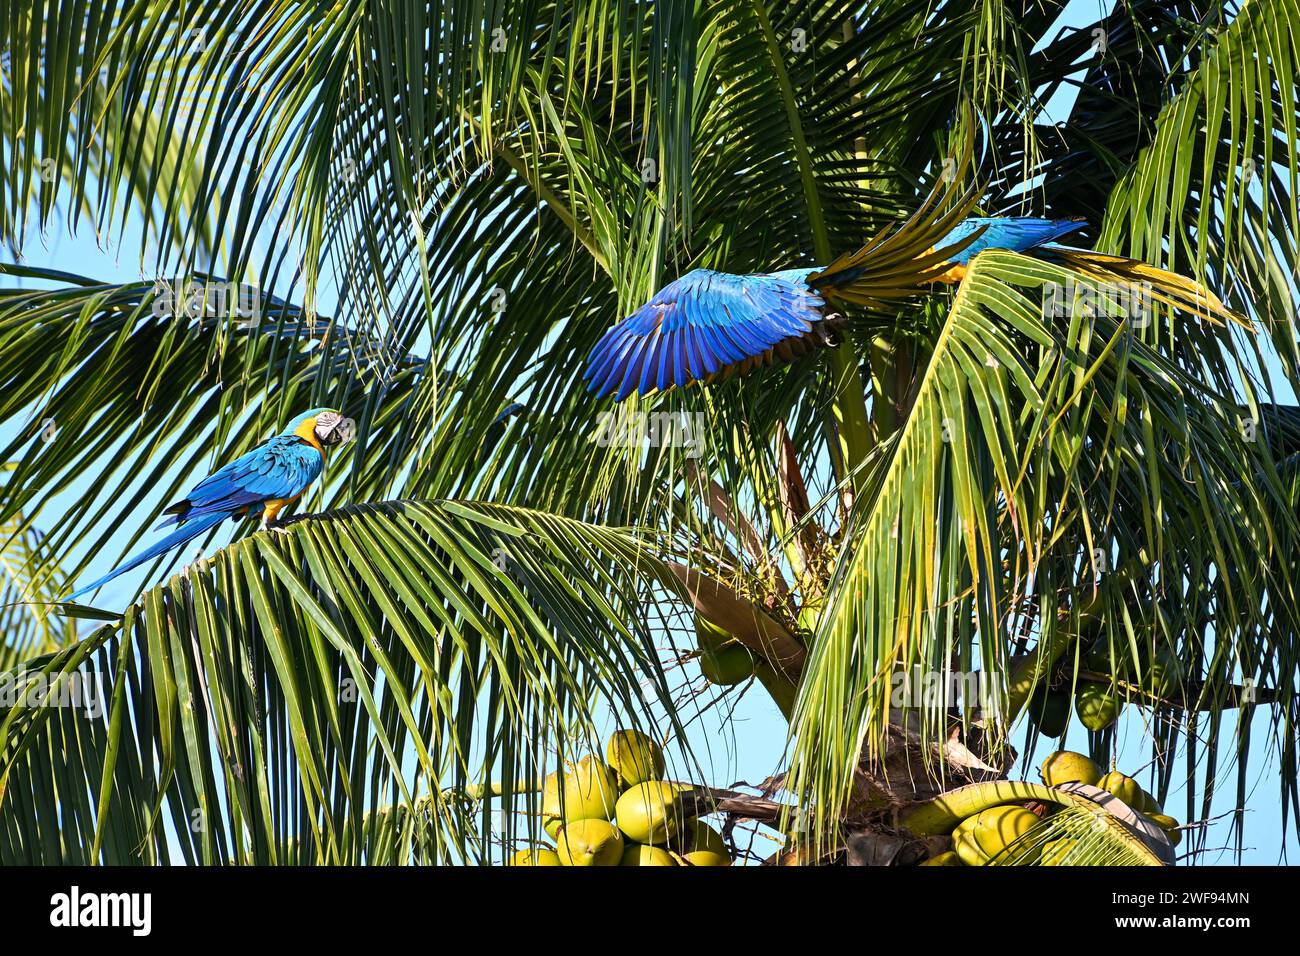 Ein Niedrigwinkelfoto von lebendigen Aras auf einer Palme in einer üppigen tropischen Umgebung Stockfoto